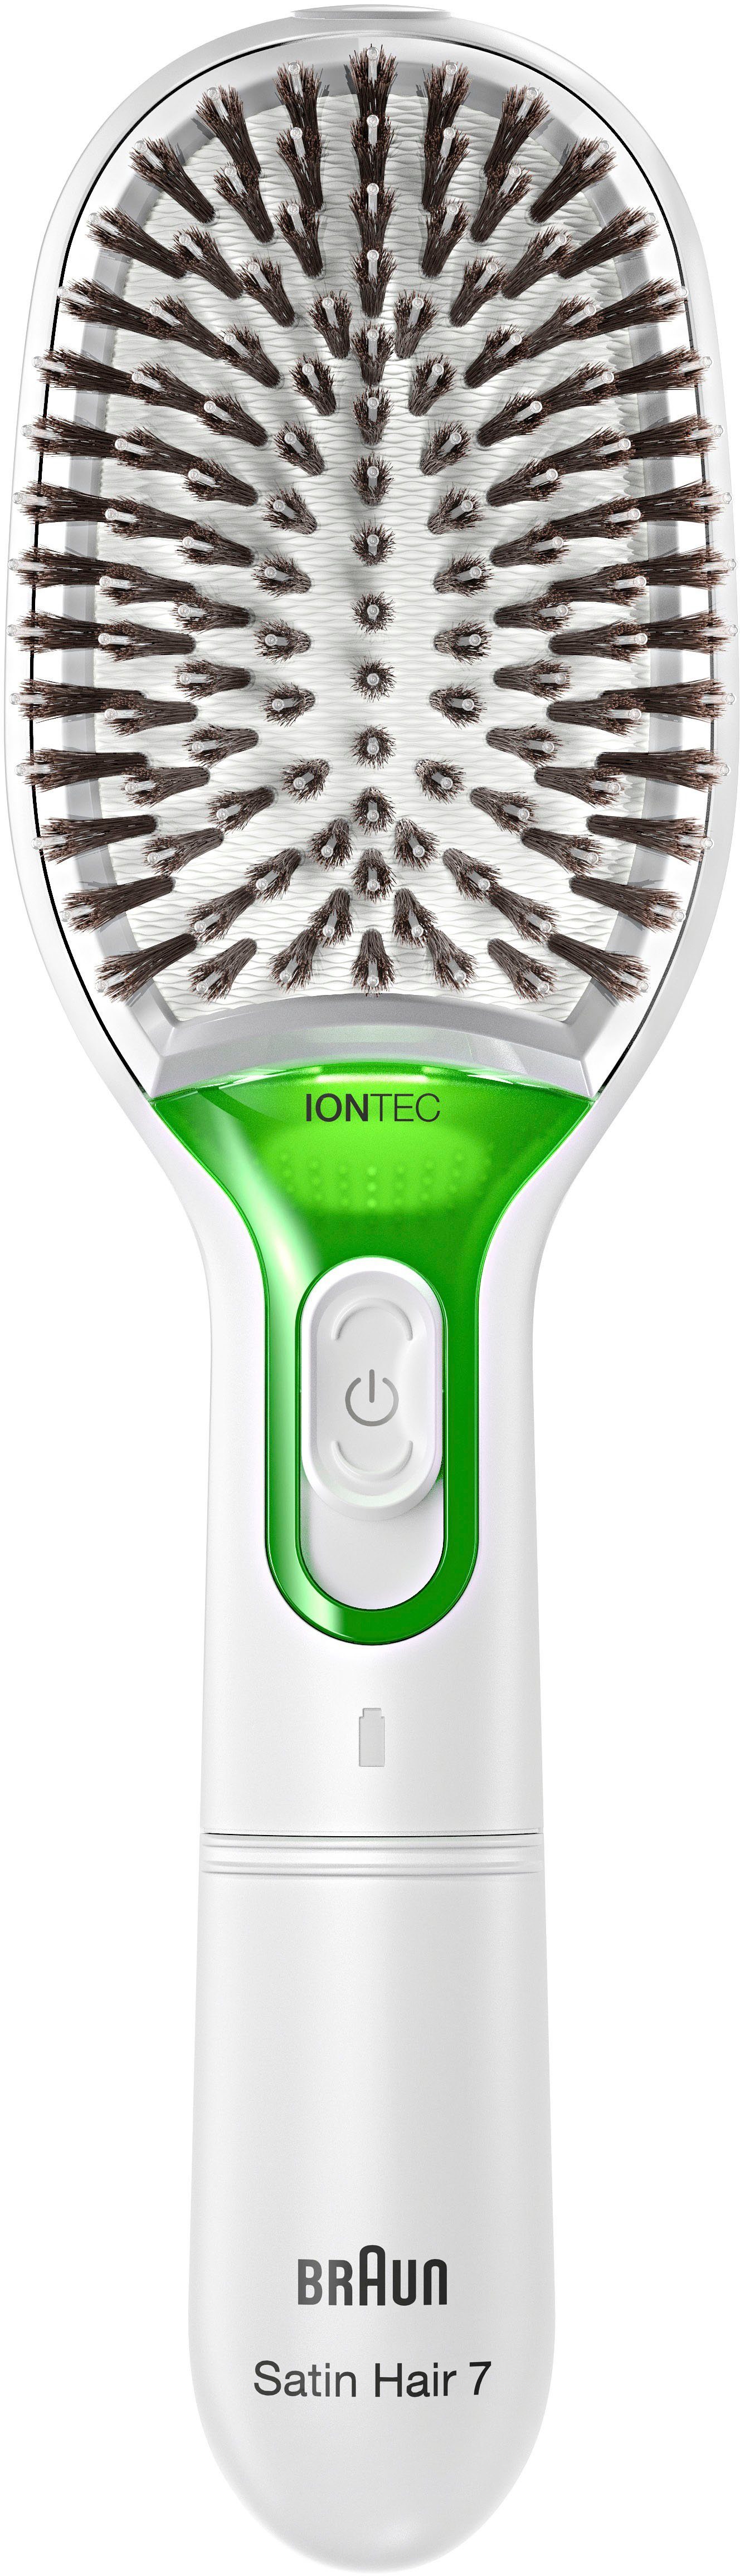 Naturborsten mit Elektrohaarbürste Braun Hair Bürste Technologie Satin 7 IONTEC und